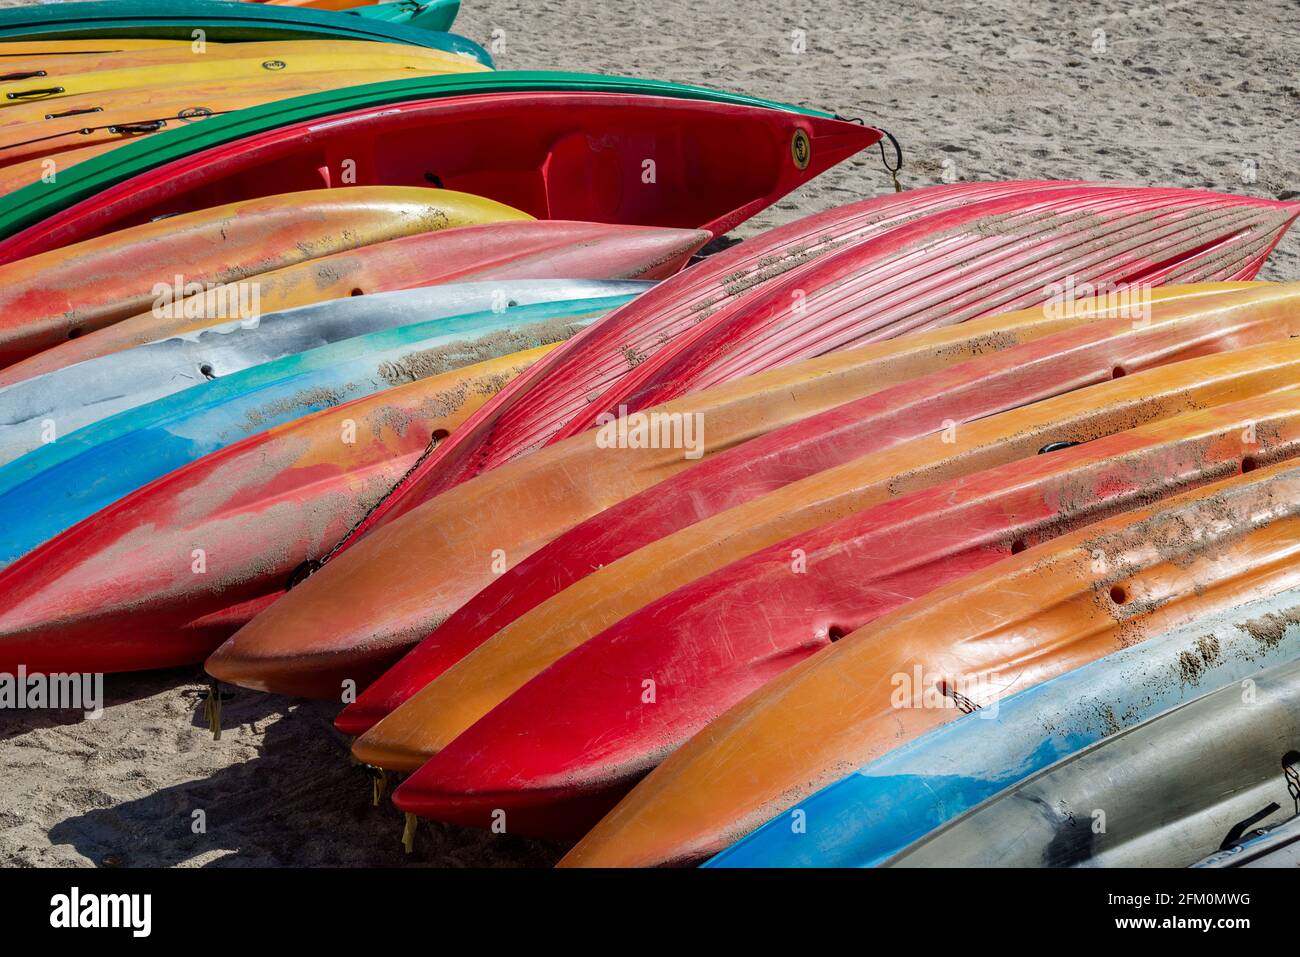 Canoës colorés sur une plage de sable Banque D'Images